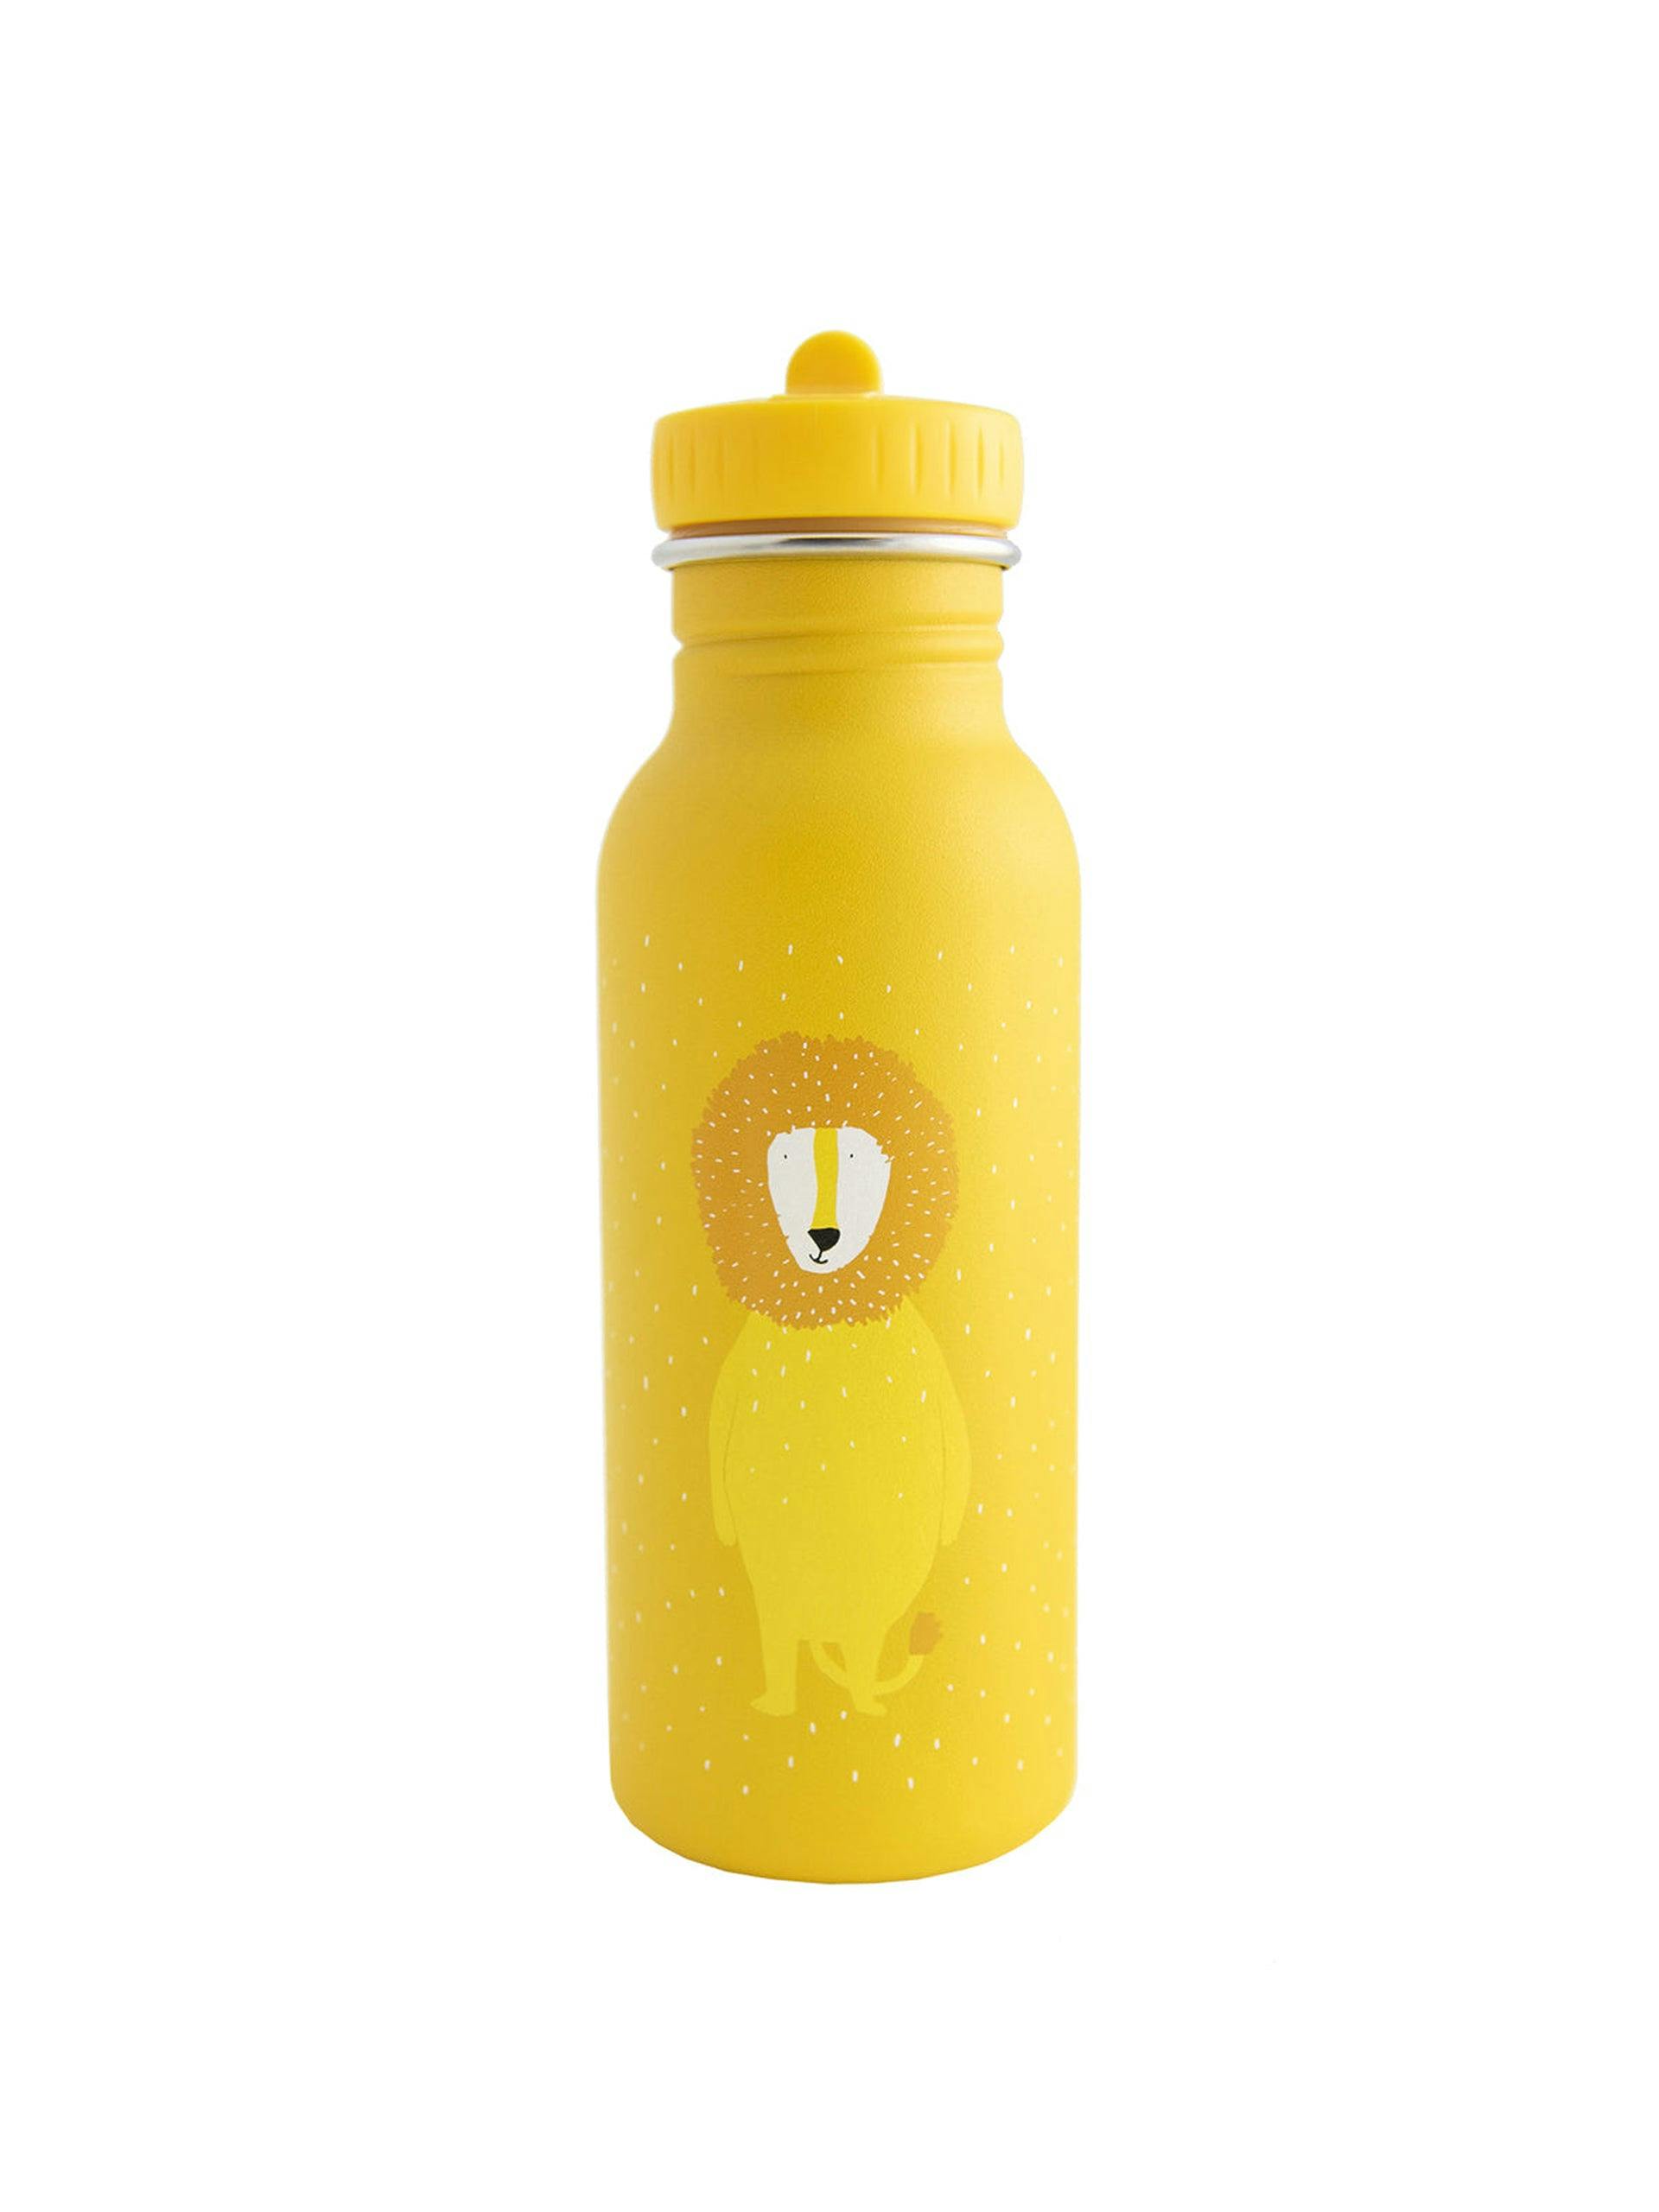 Mr Lion water bottle